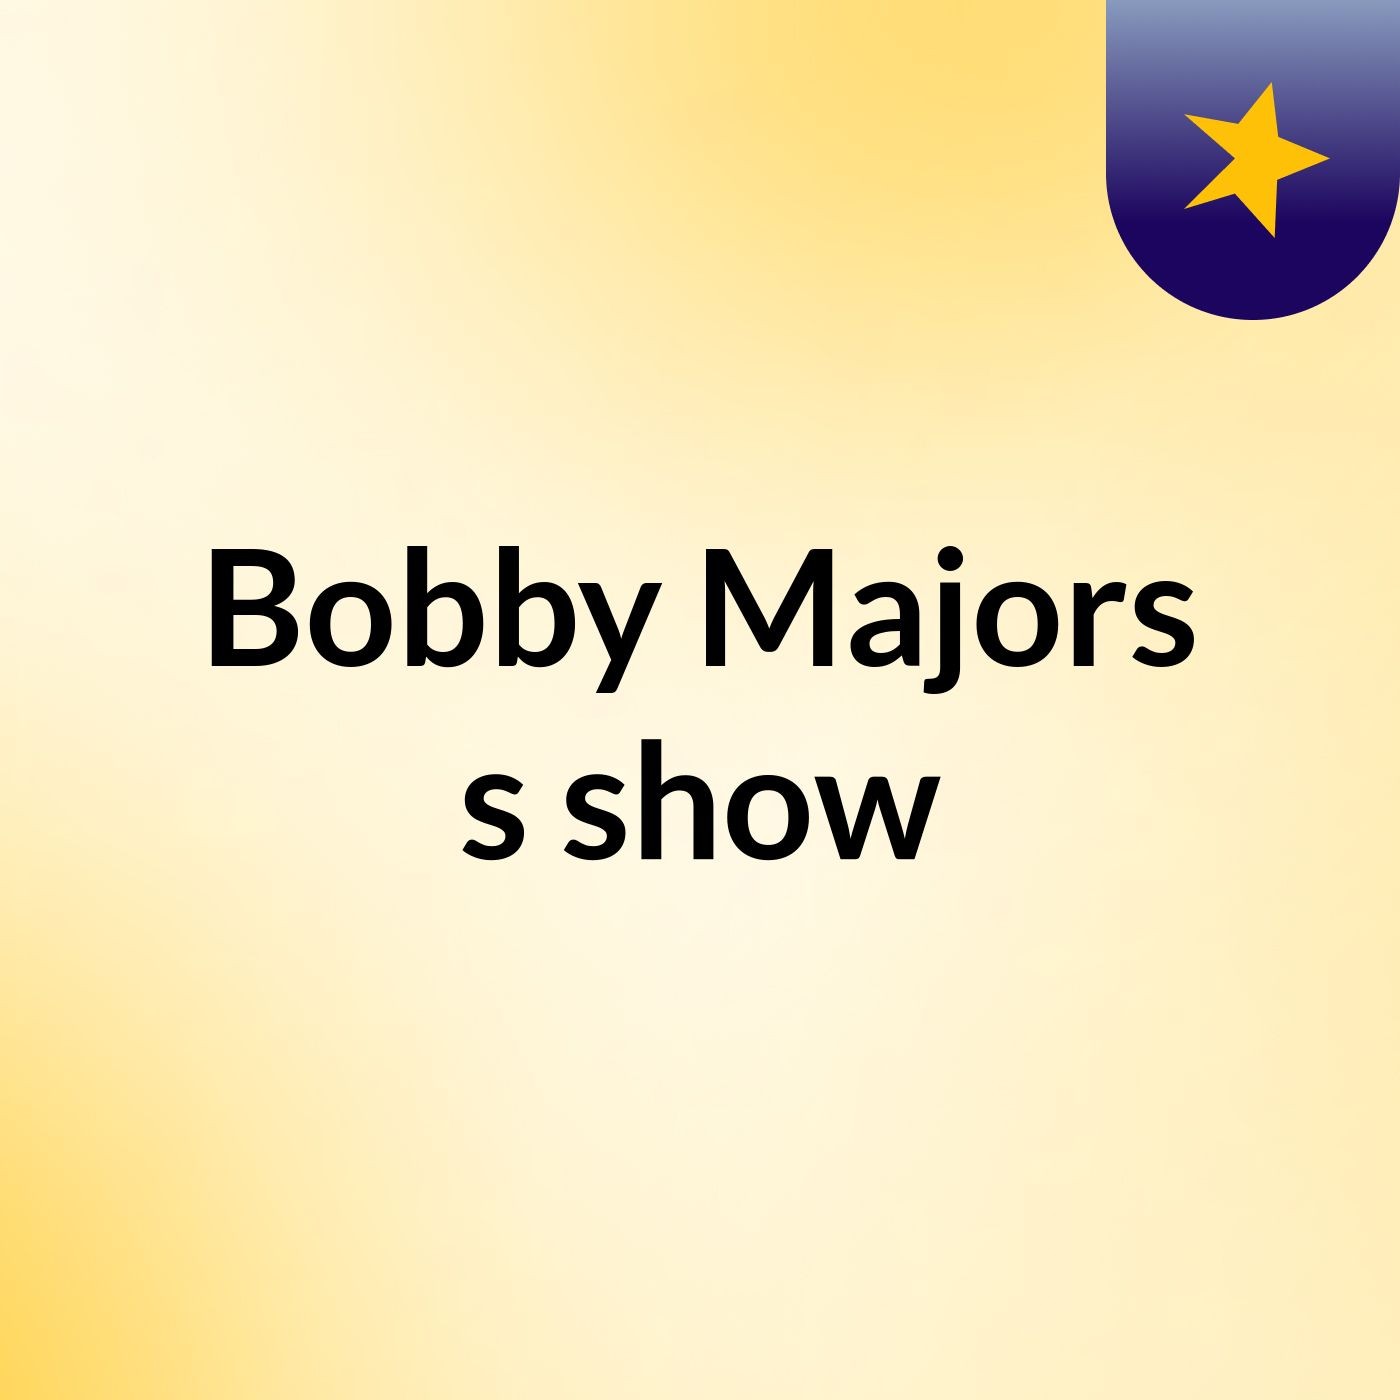 Bobby Majors's show